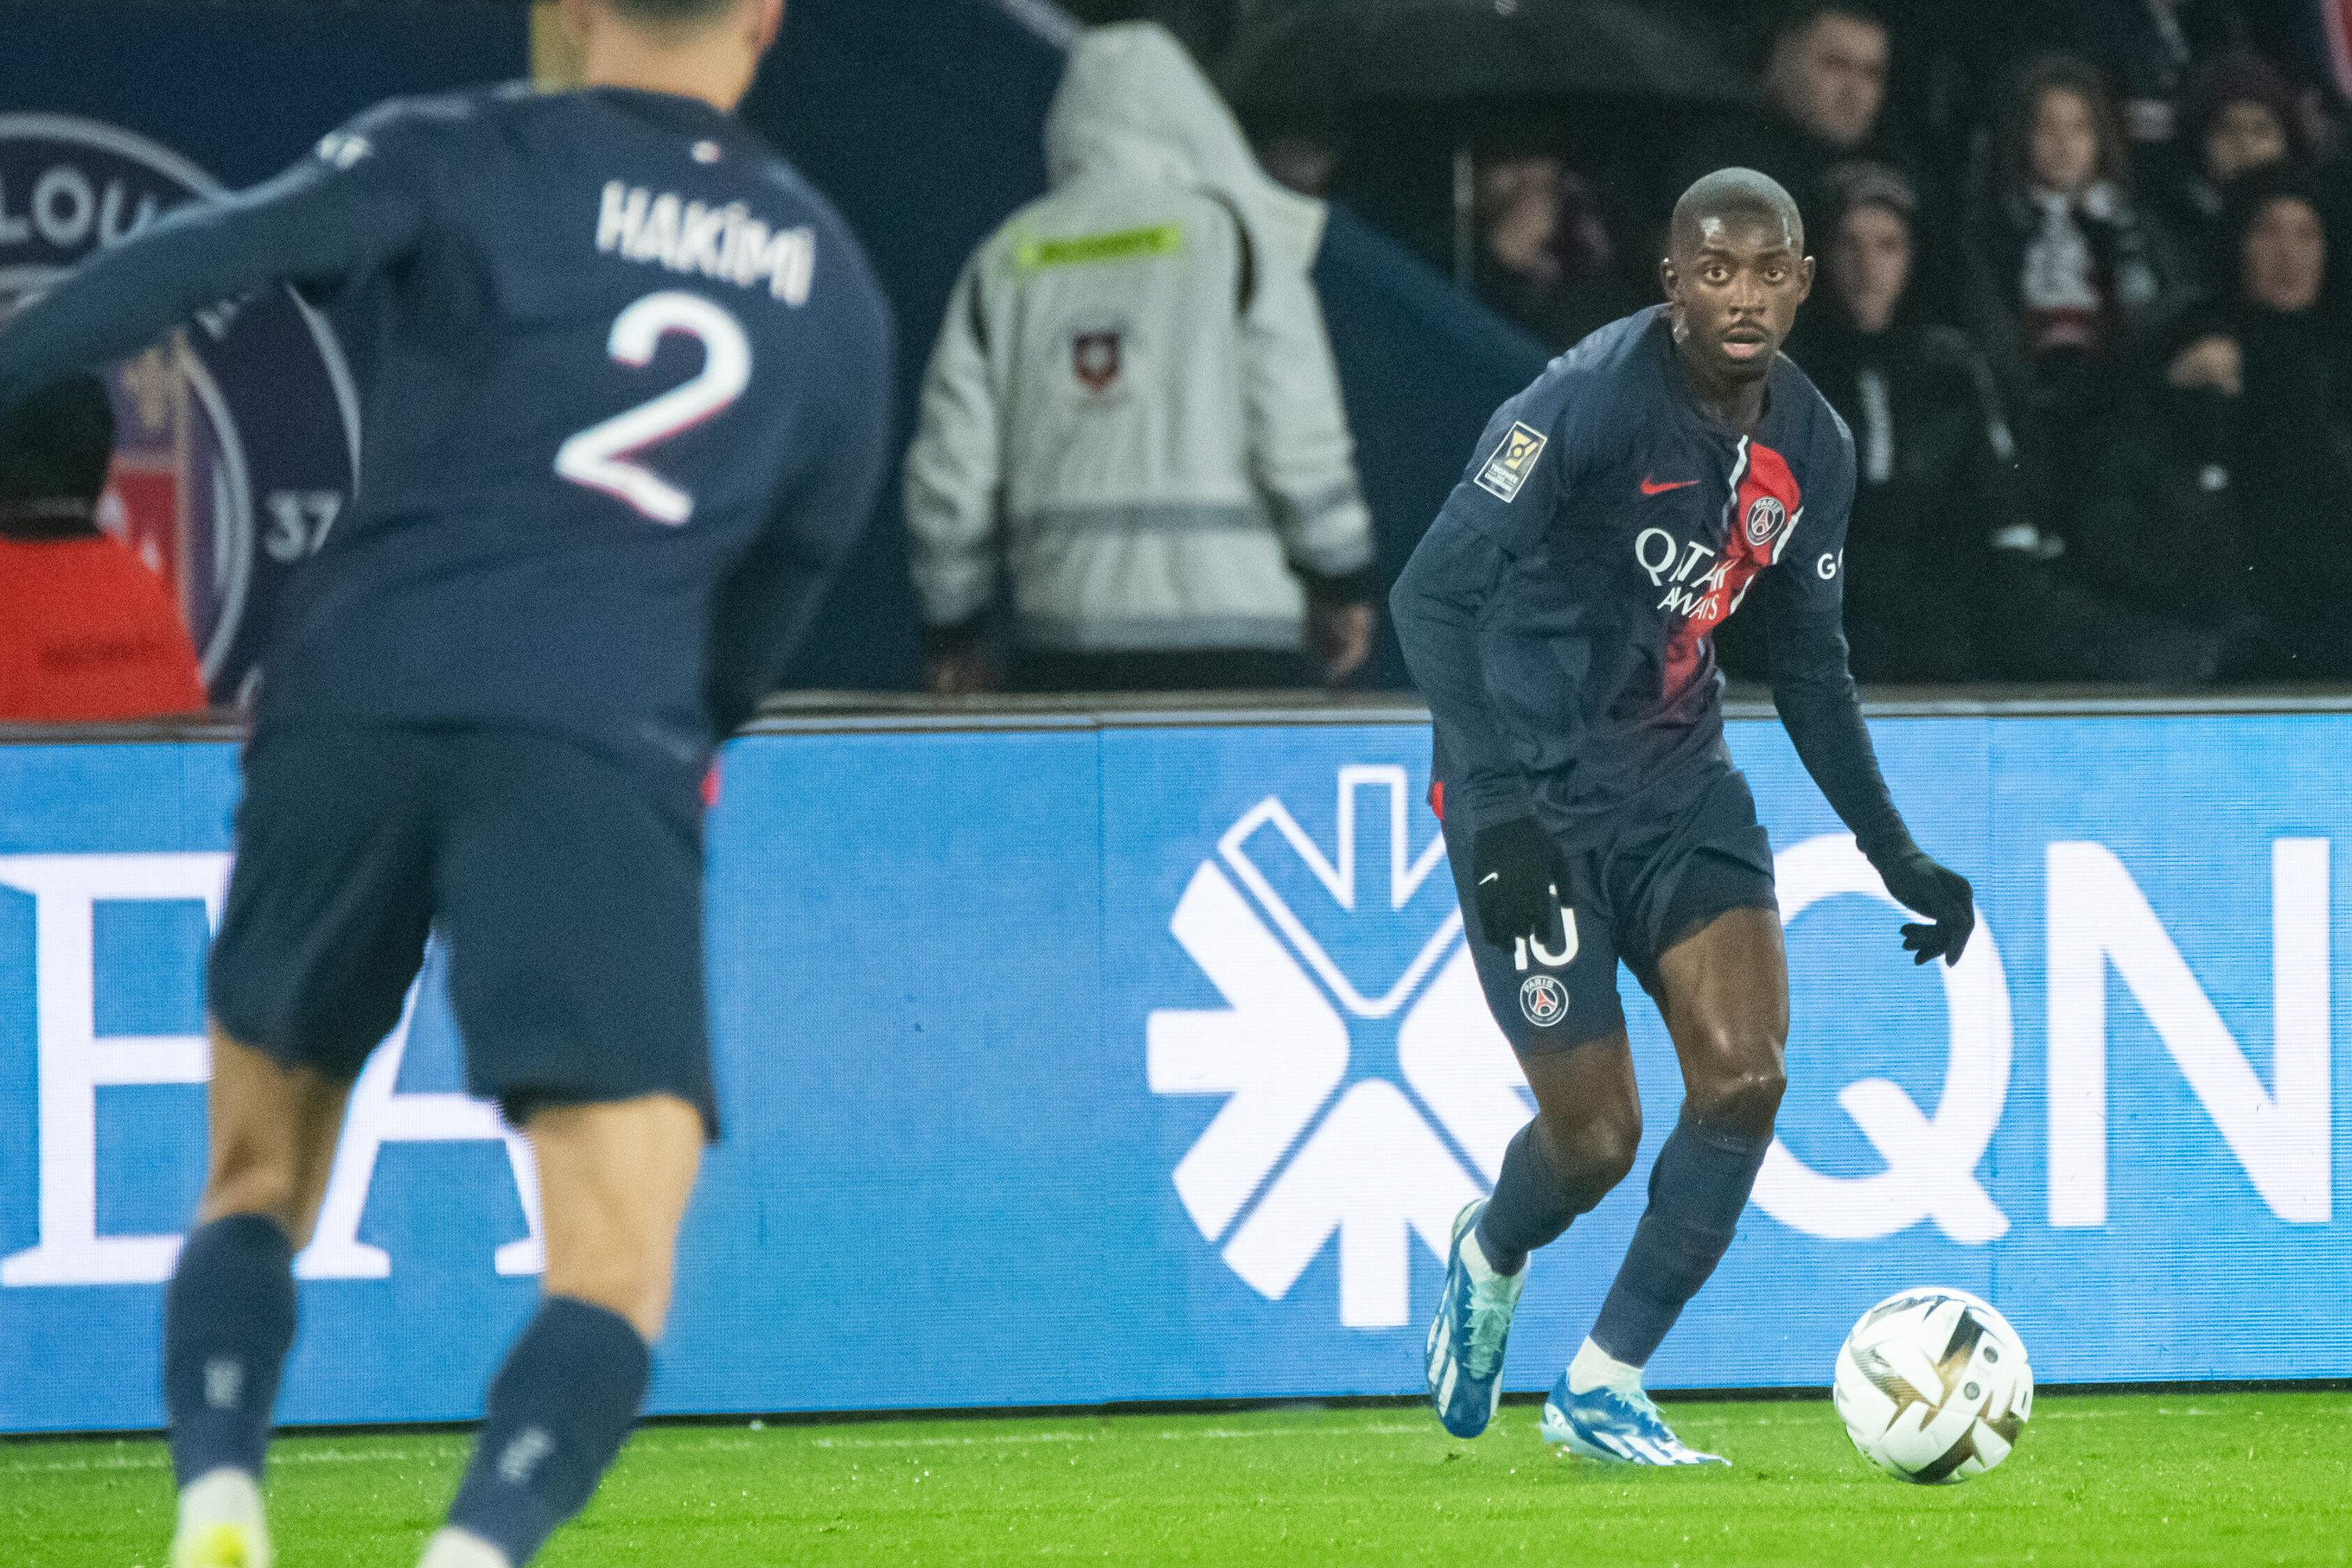 PSG: Dembélé/Hakimi, the return of the winning tandem